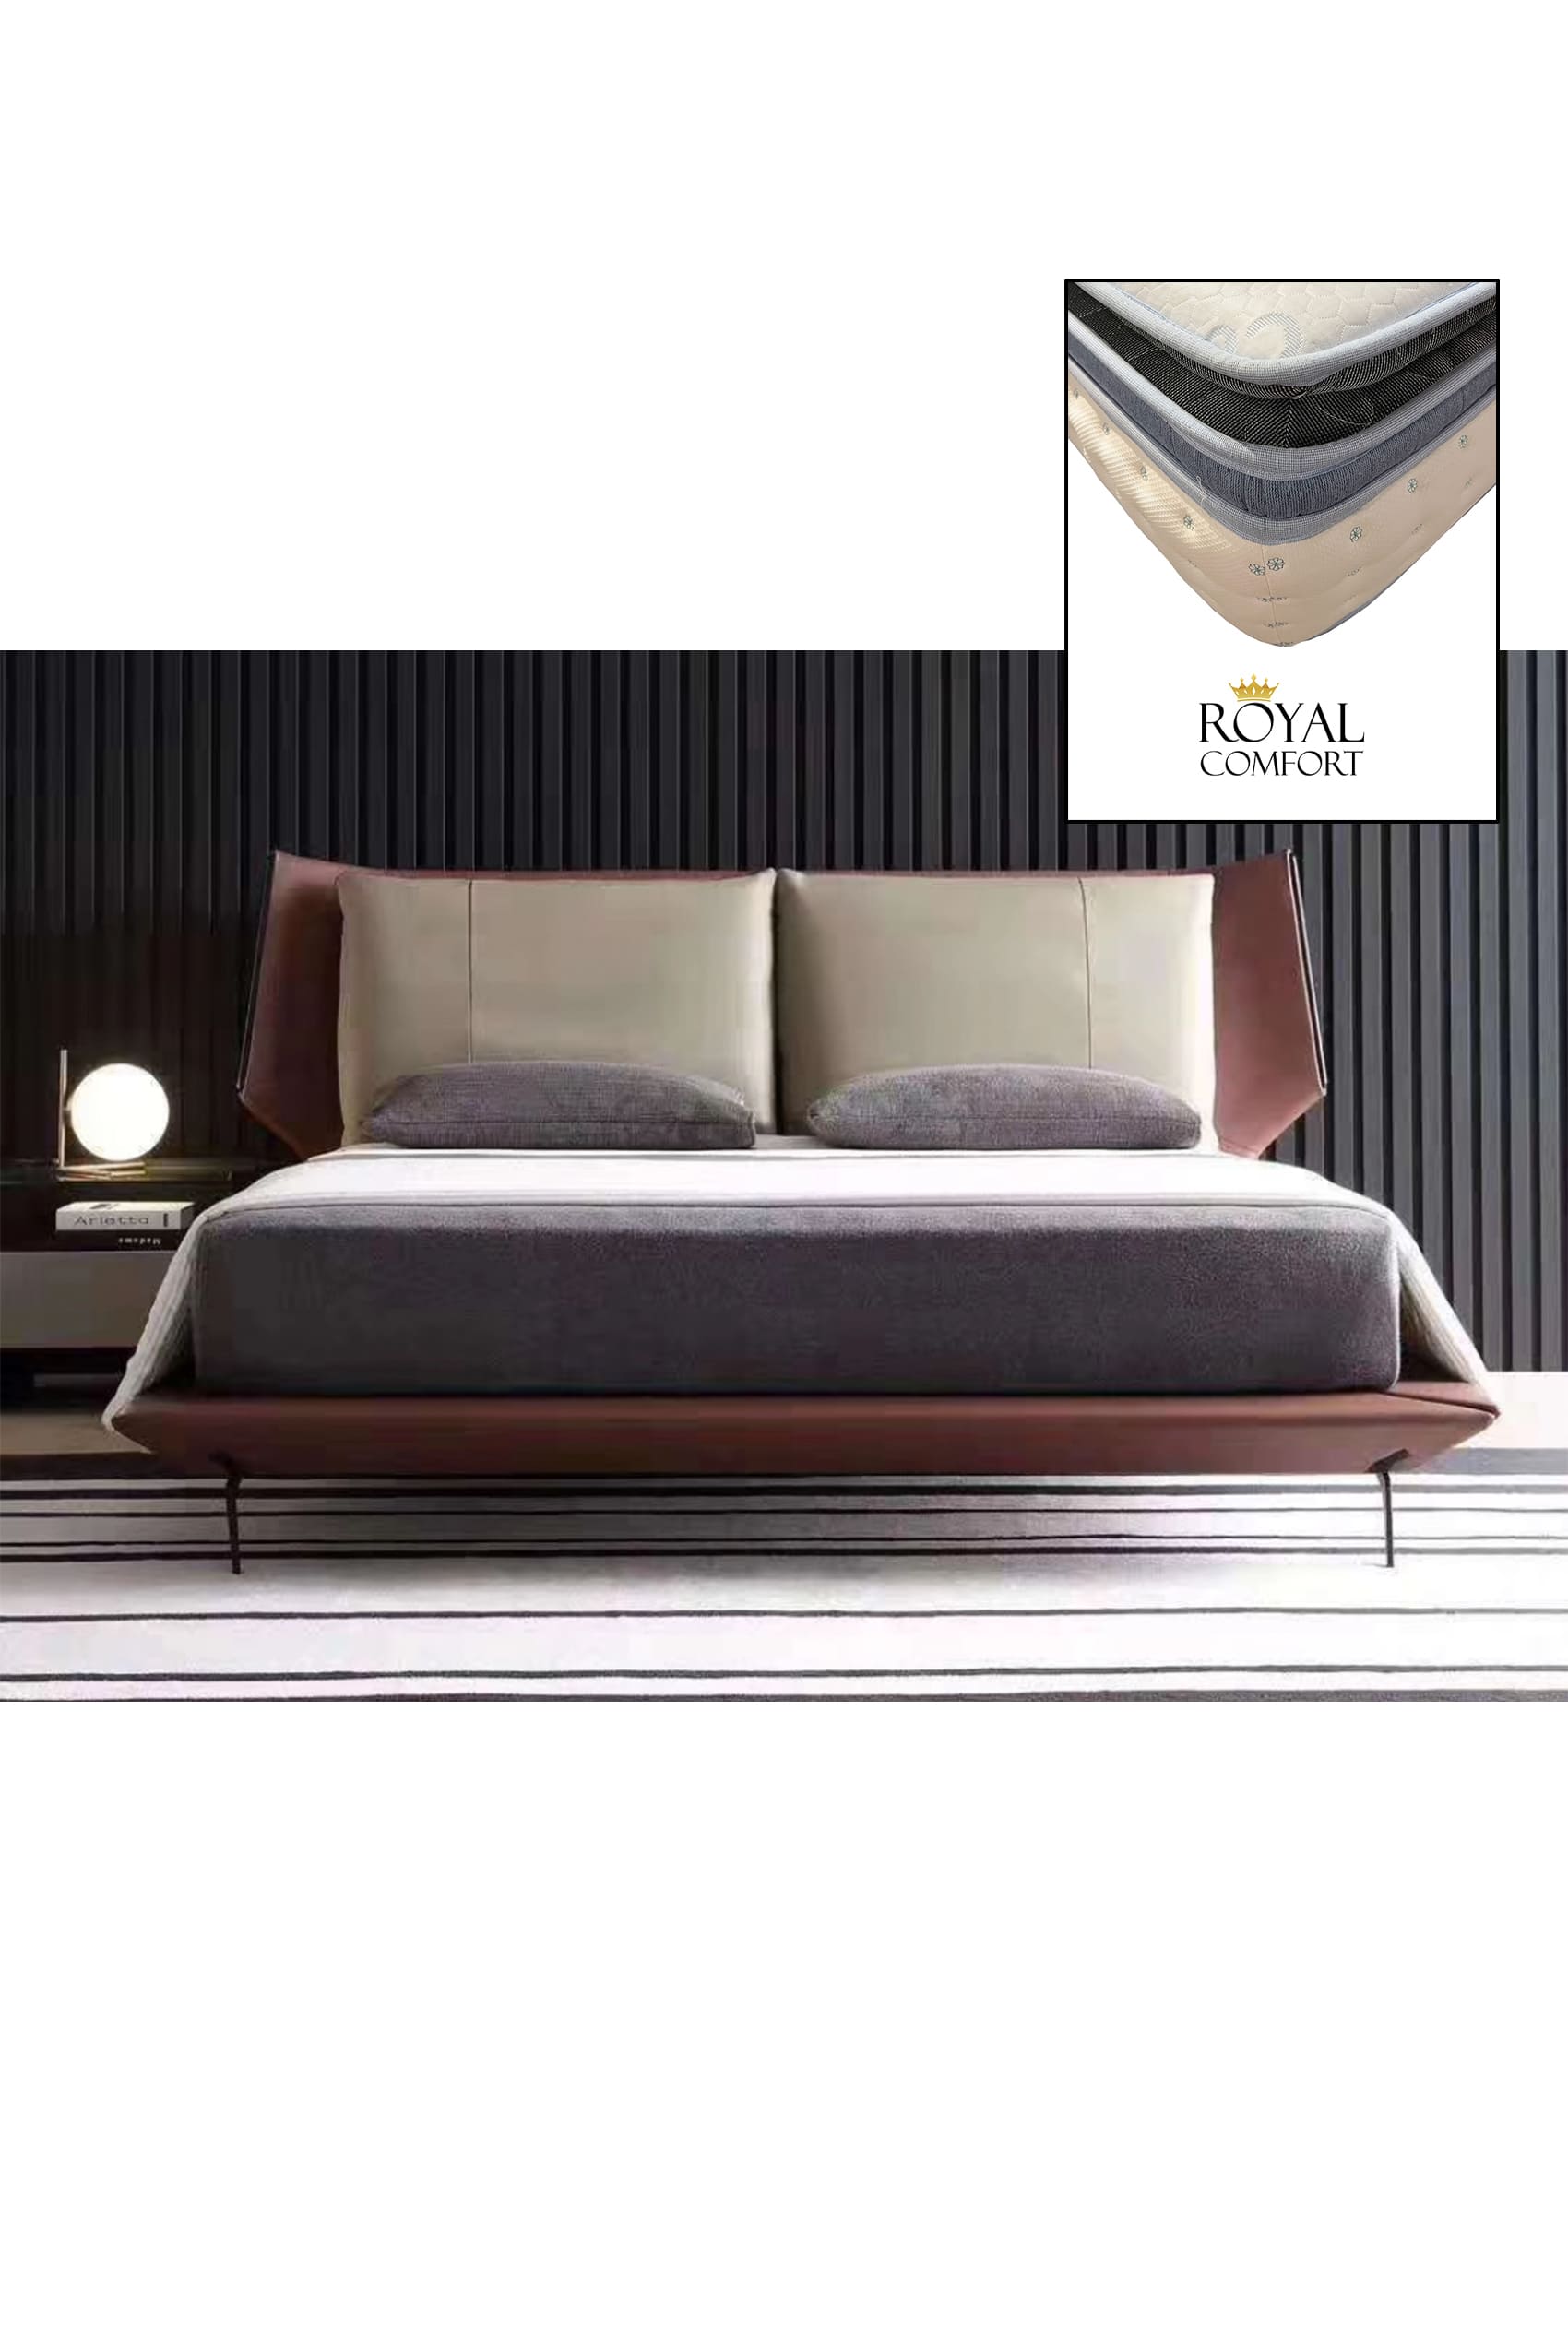 Oriana Designer Bed Frame + Royal Comfort (T5-998)